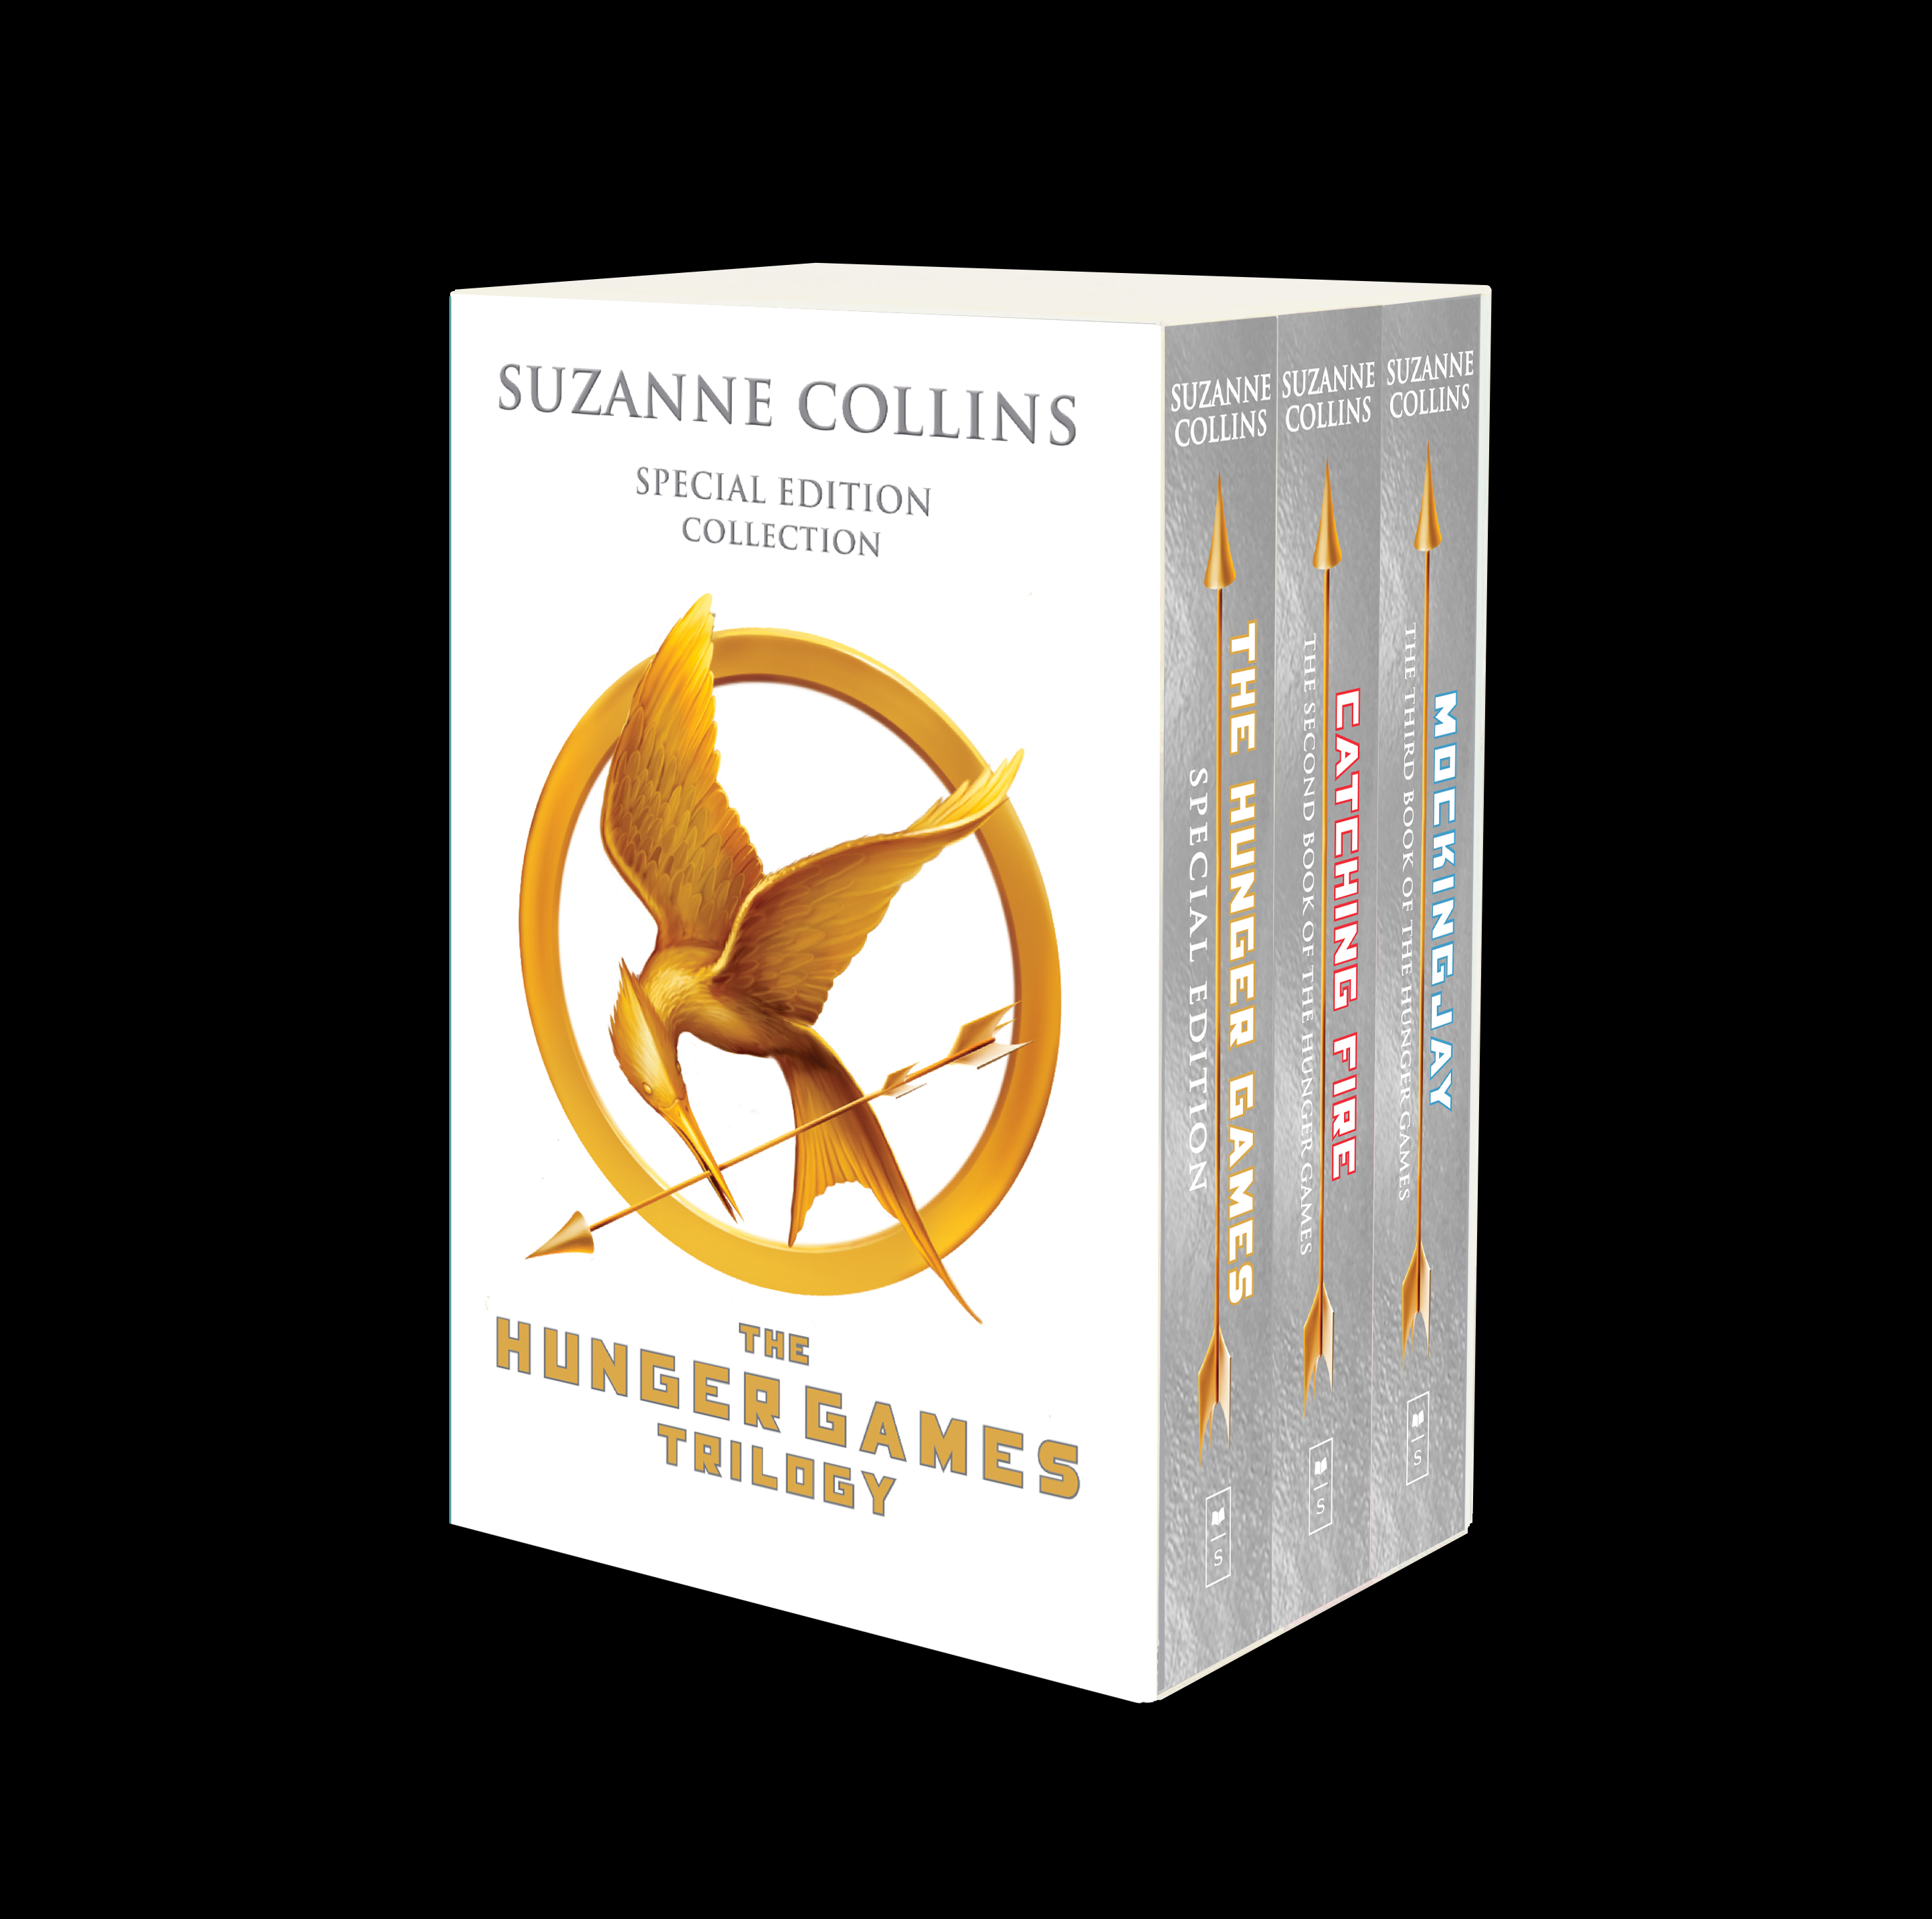 Hunger Games (trilogie) de Suzanne Collins